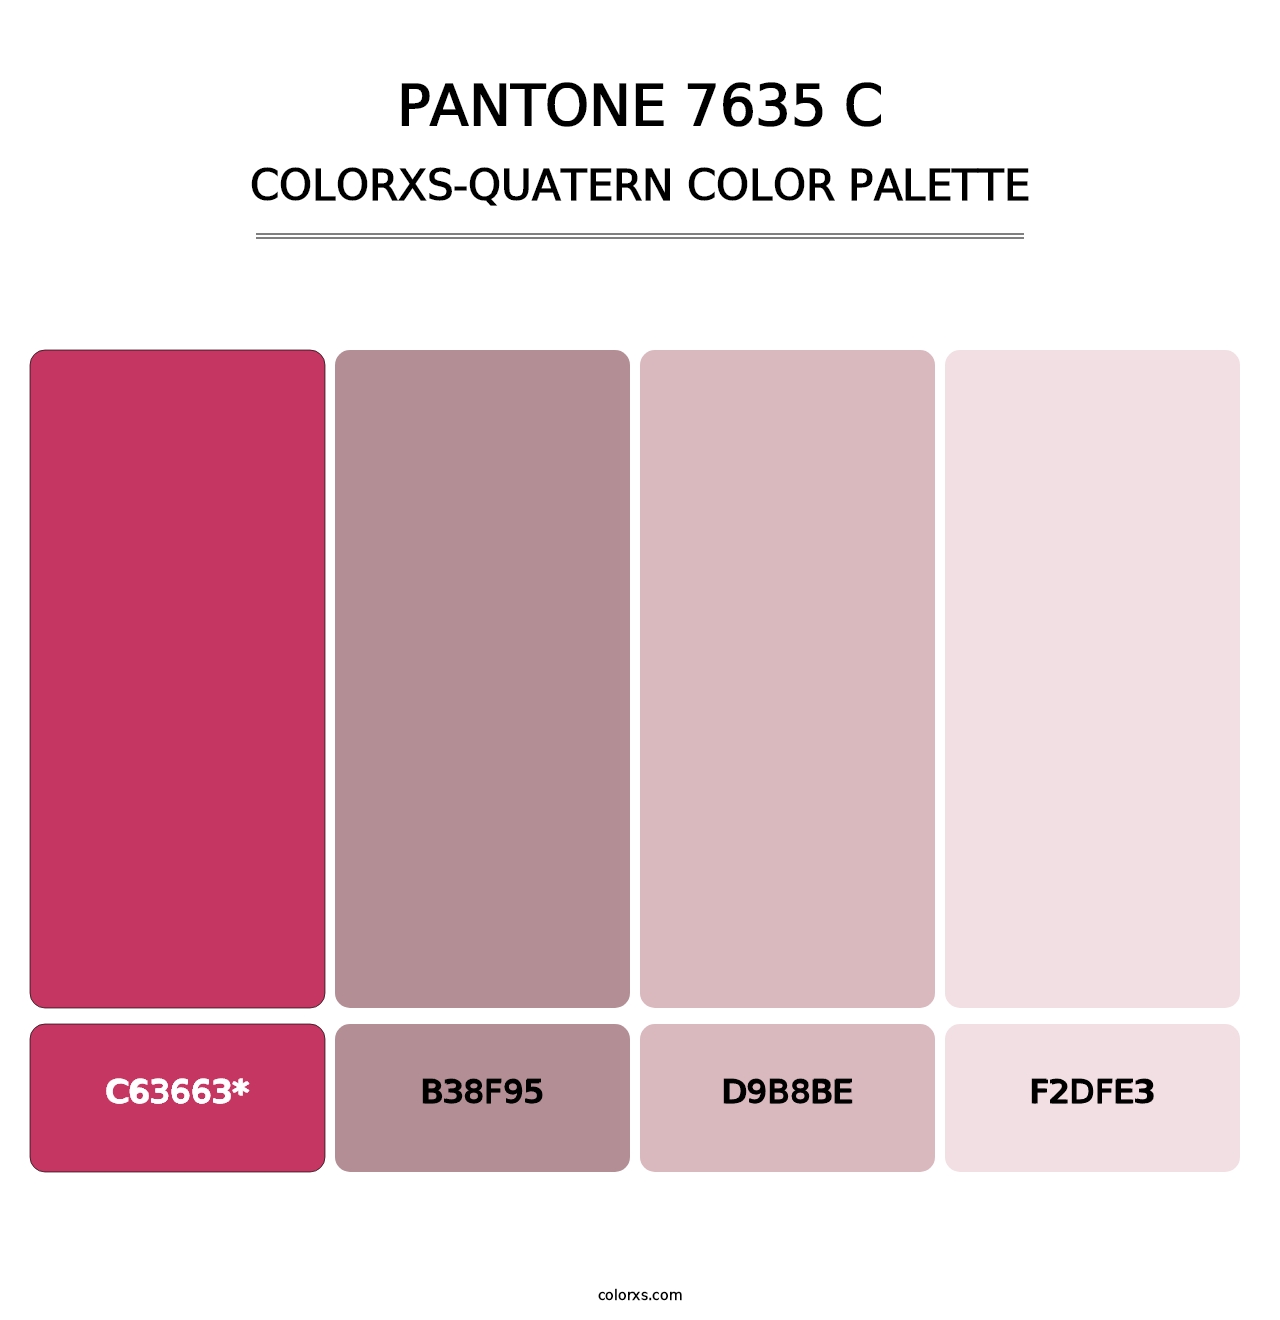 PANTONE 7635 C - Colorxs Quatern Palette